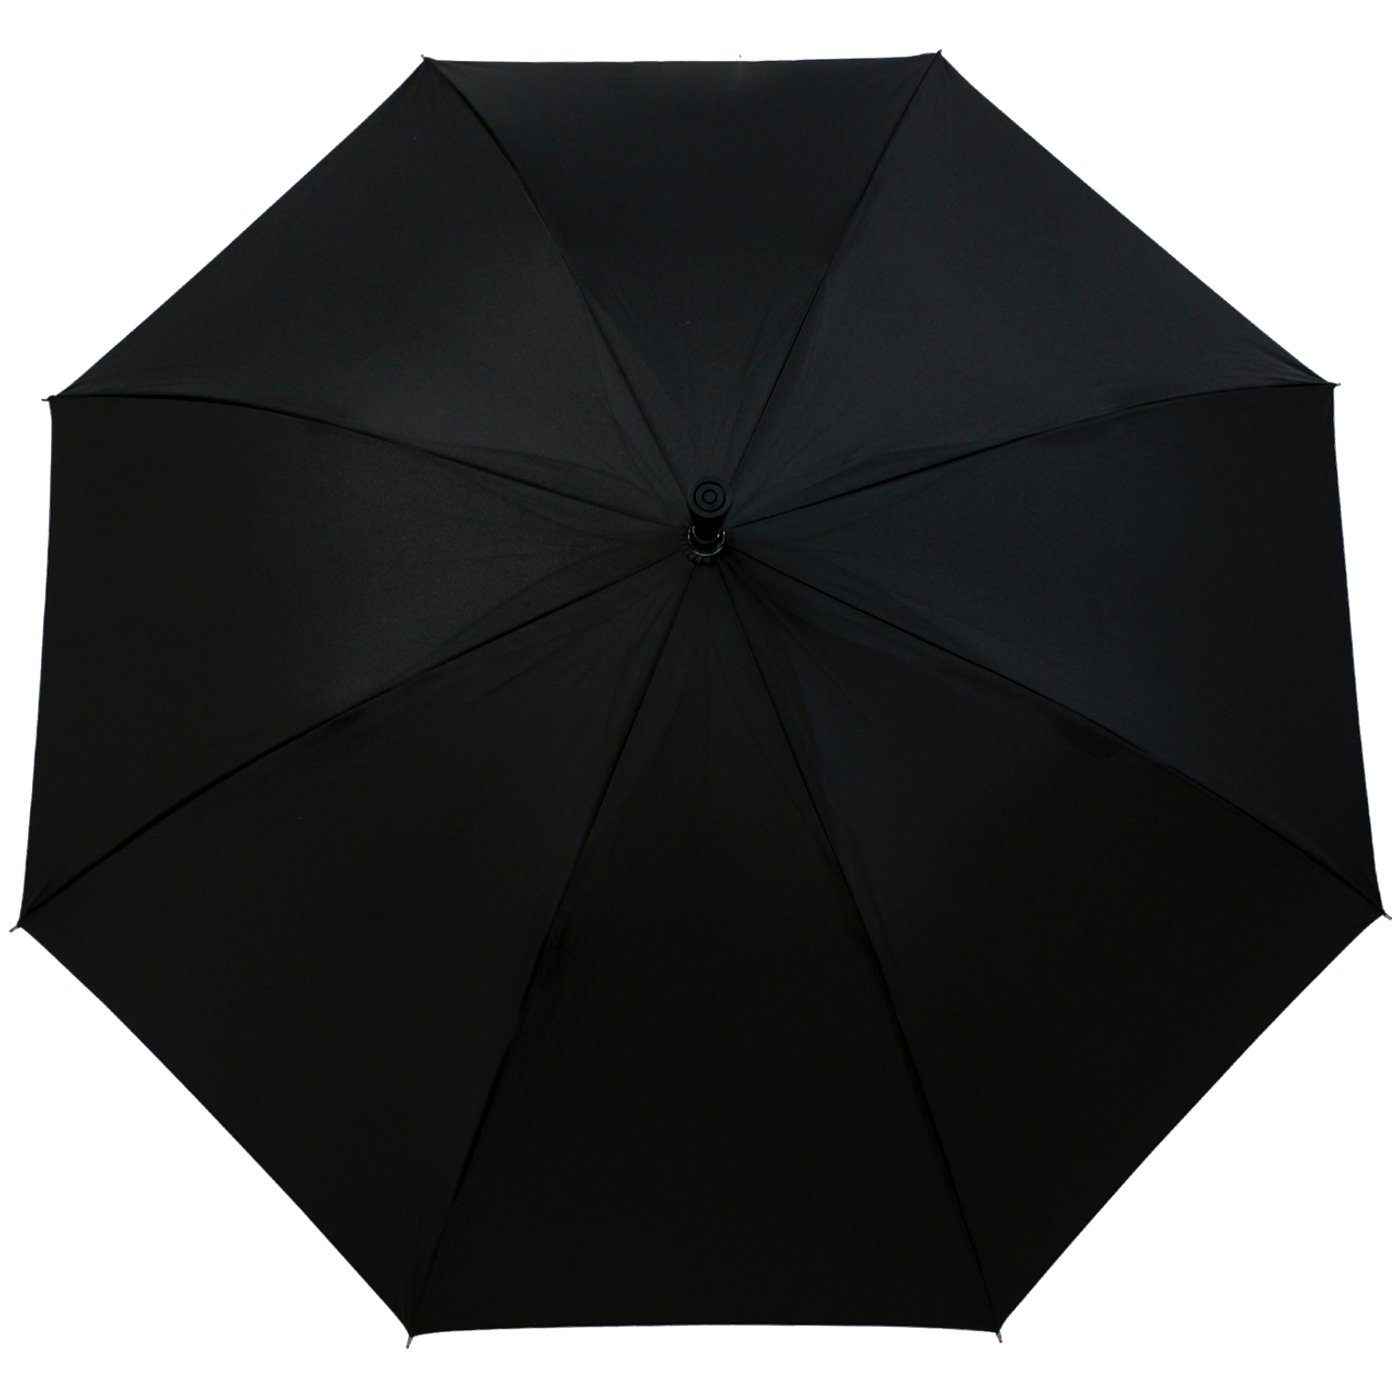 Langregenschirm schwarz höhenverstellbar sehr stabil, Stützschirm extrem-stabil Holzgriff iX-brella